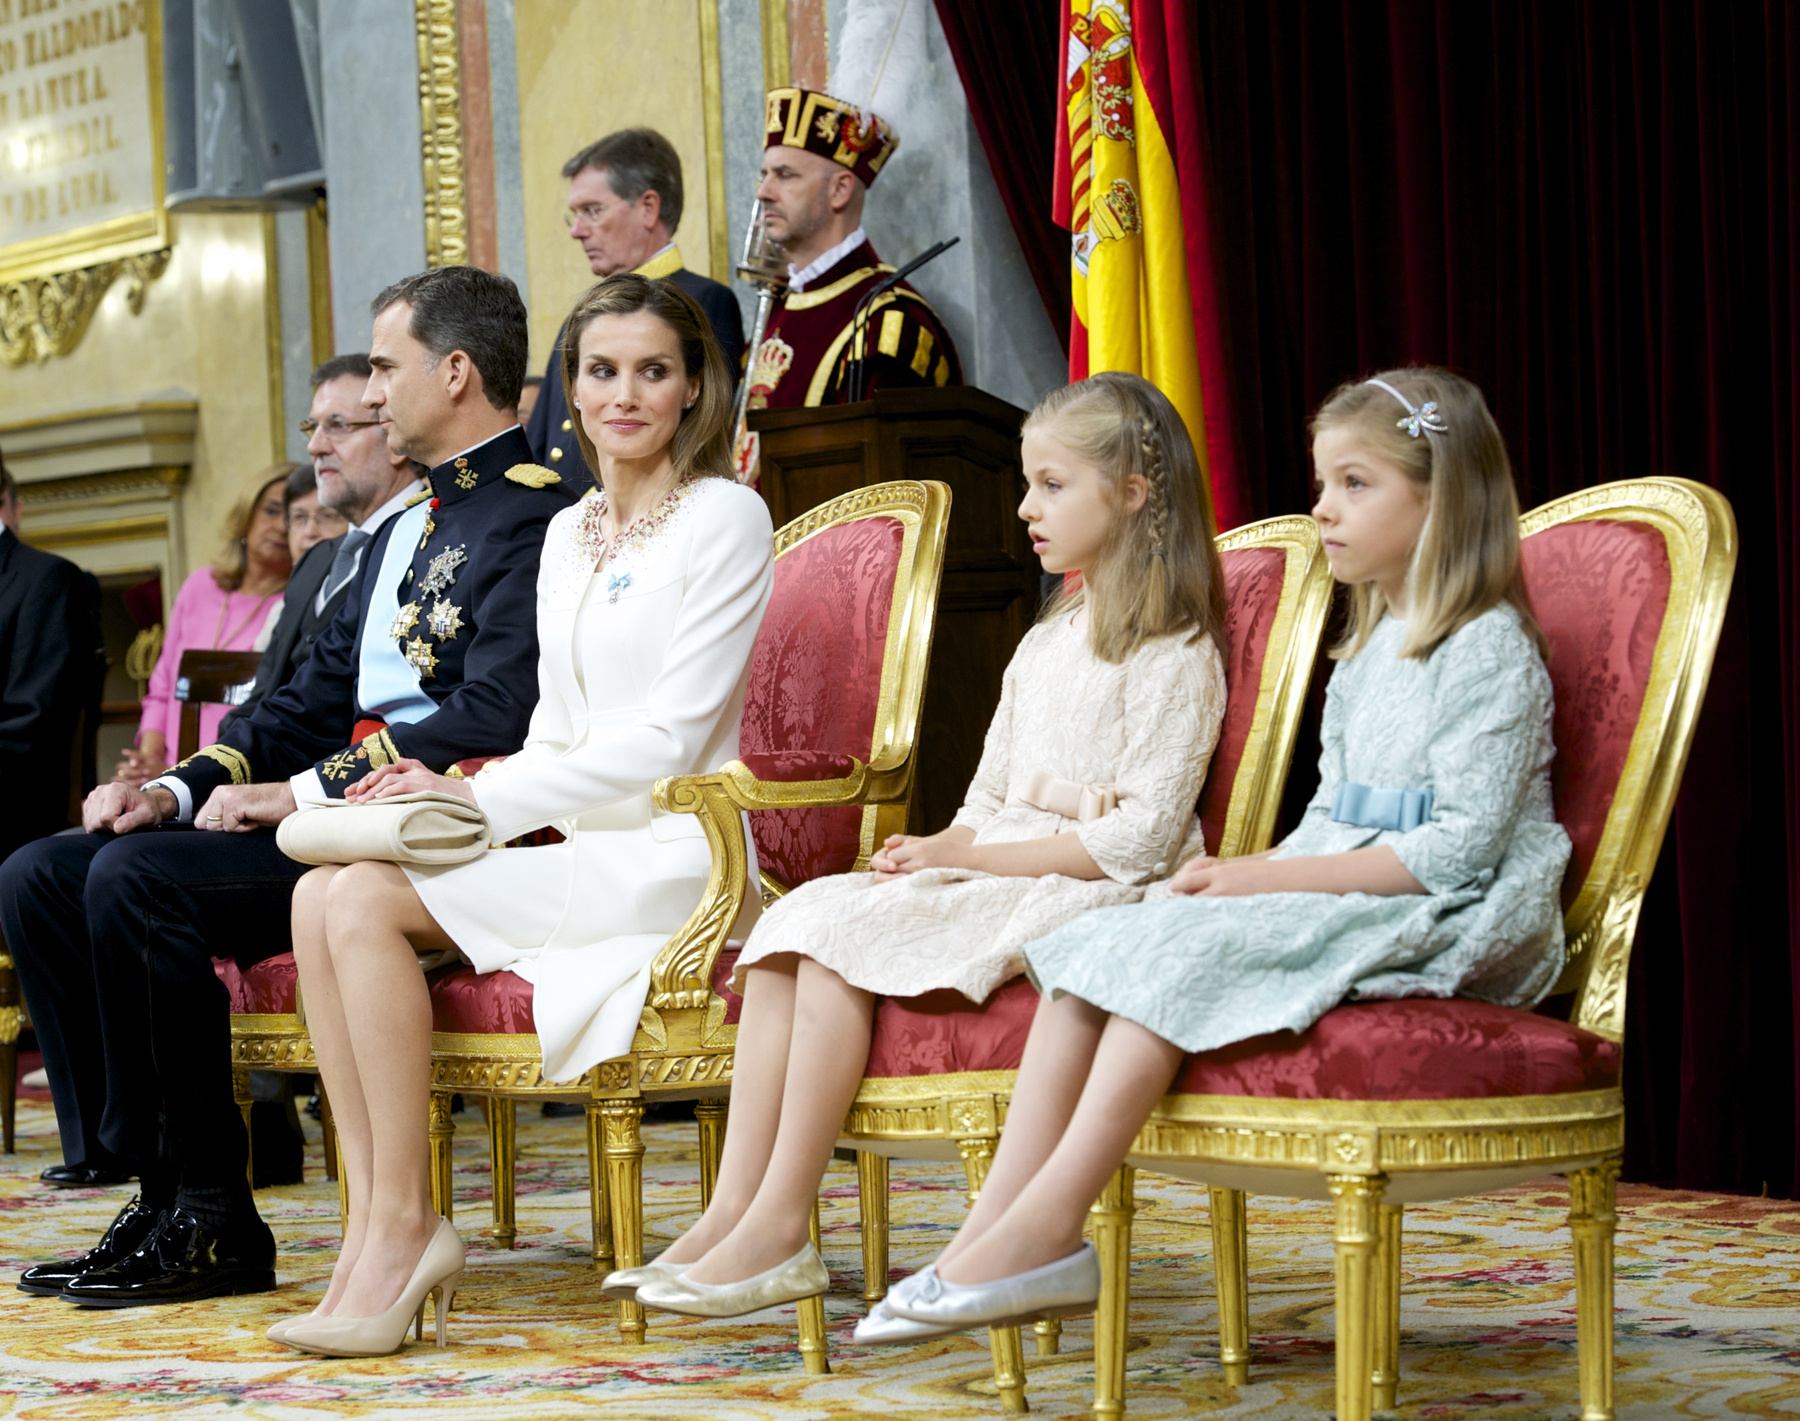 Letícia visszafogott kabátjának nyakánál a díszítés a spanyol zászló színeiben csillog, a két lány, Zsófia és Eleonóra ruhája pedig tökéletesen illik anyjuk szettjéhez.